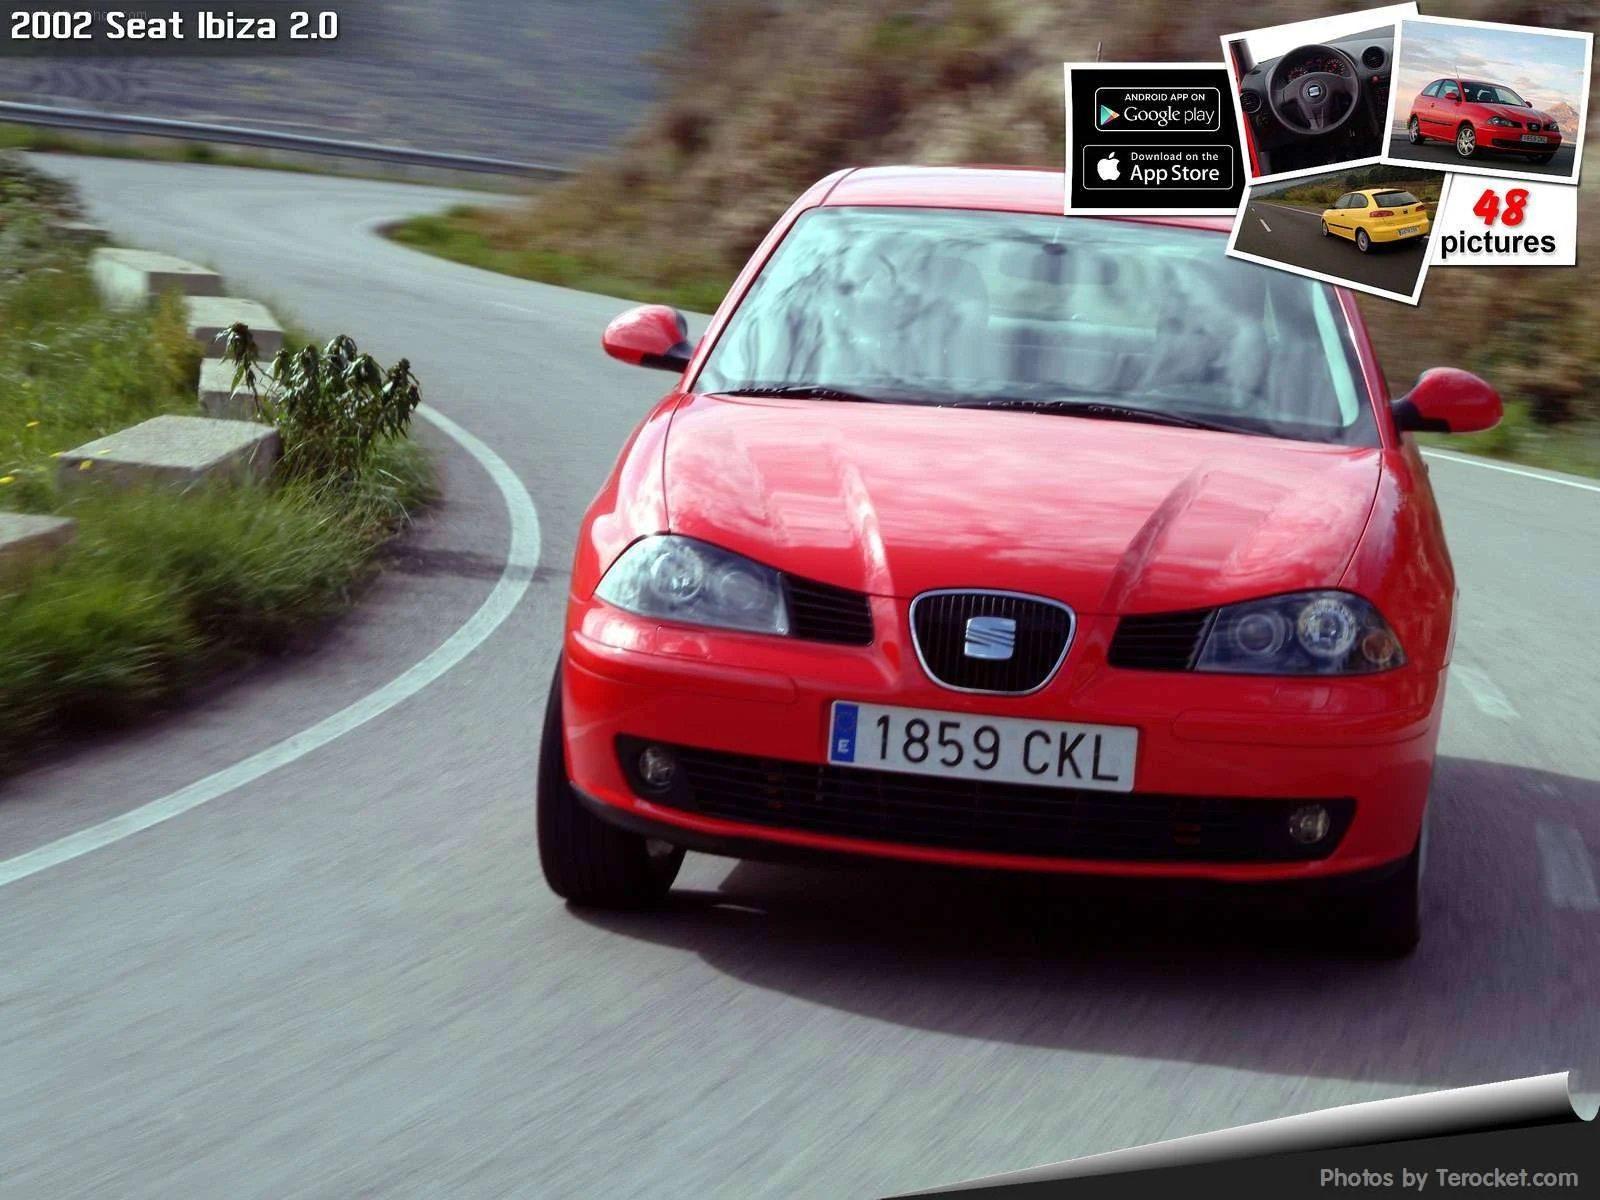 Hình ảnh xe ô tô Seat Ibiza 2.0 2002 & nội ngoại thất